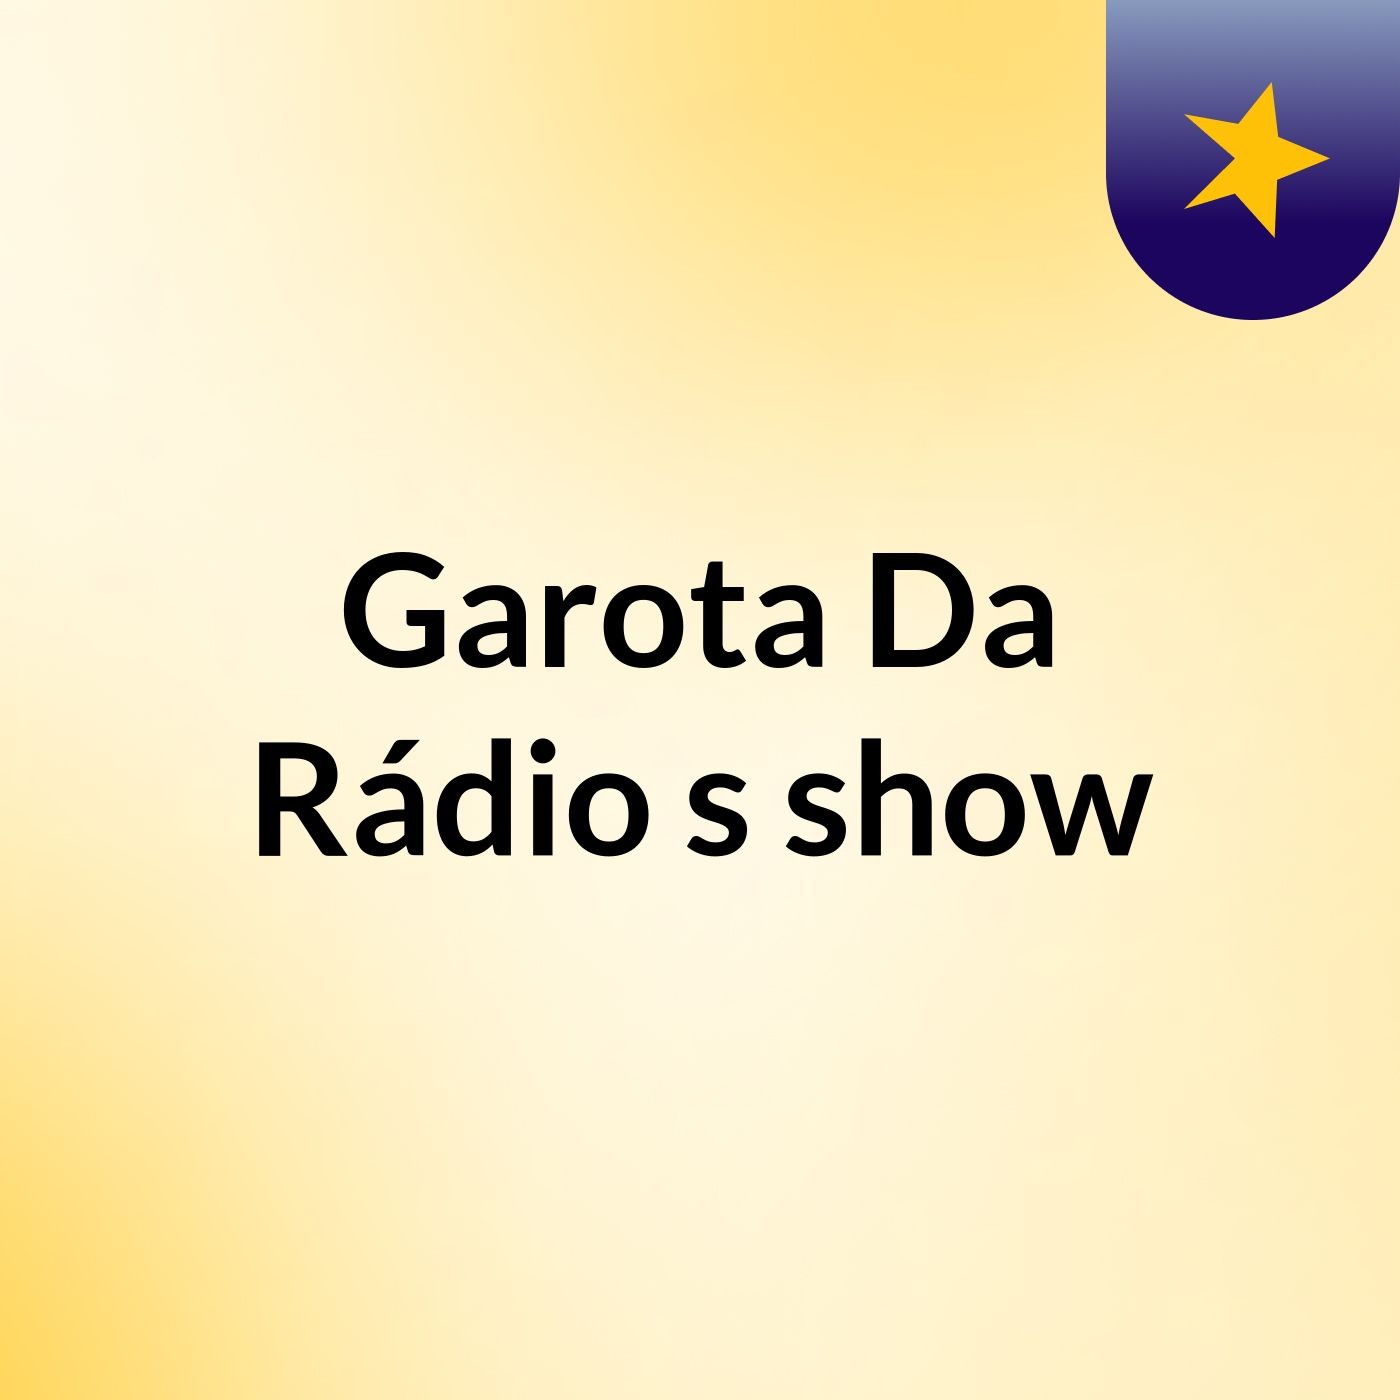 Garota Da Rádio's show